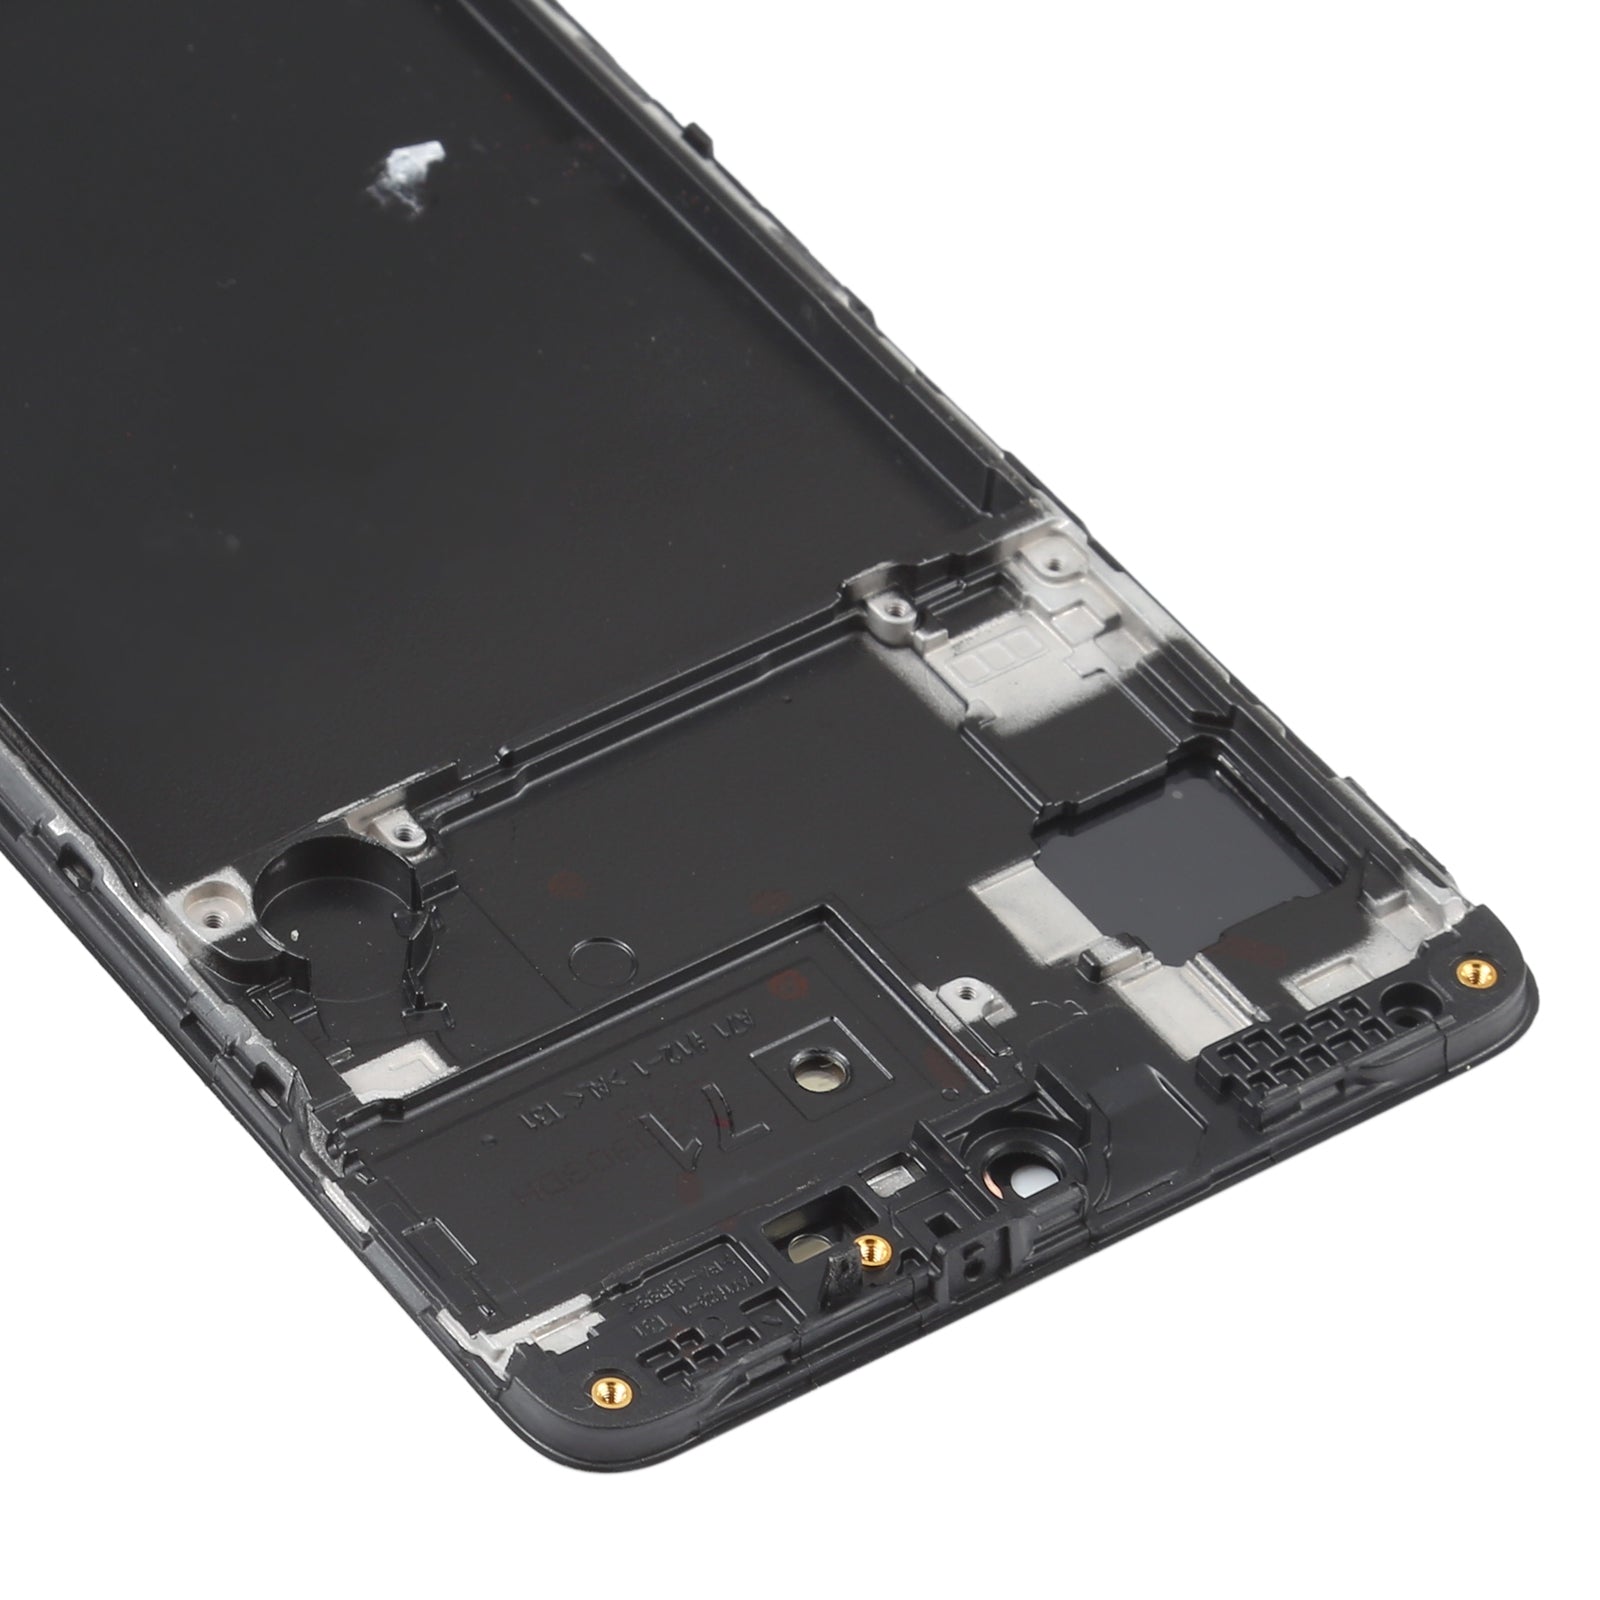 Pantalla LCD + Tactil + Marco (Oled) Samsung Galaxy A71 A715 (6.39) Negro